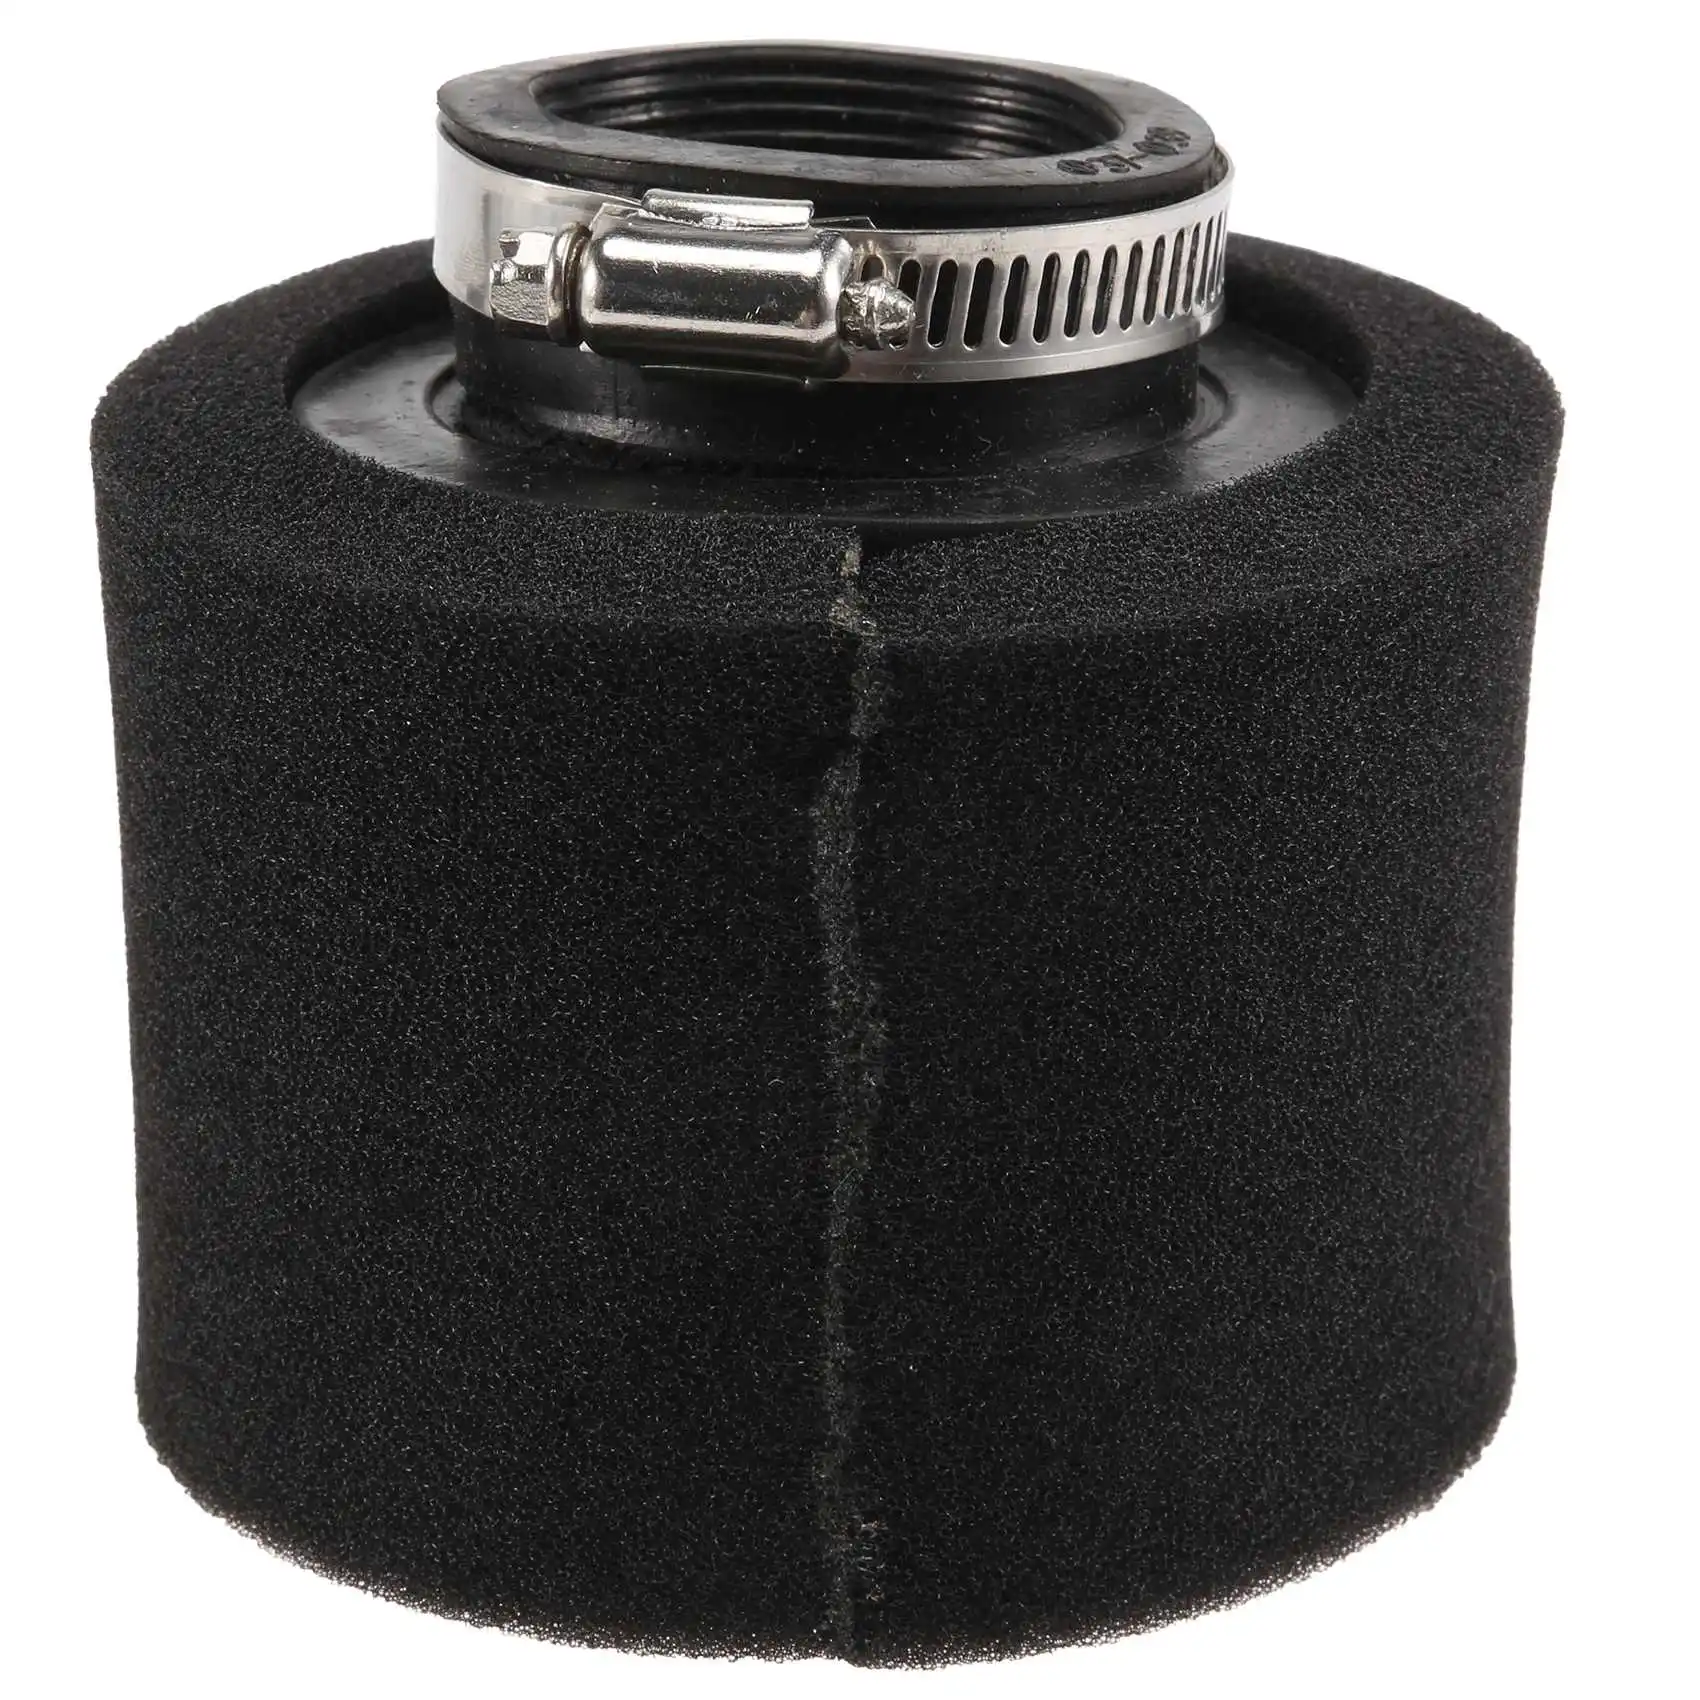 Черный 38-миллиметровый воздушный фильтр с двойным поролоном 110/125 / 150Cc, Пит-байк, Квадроцикл Atv, Багги